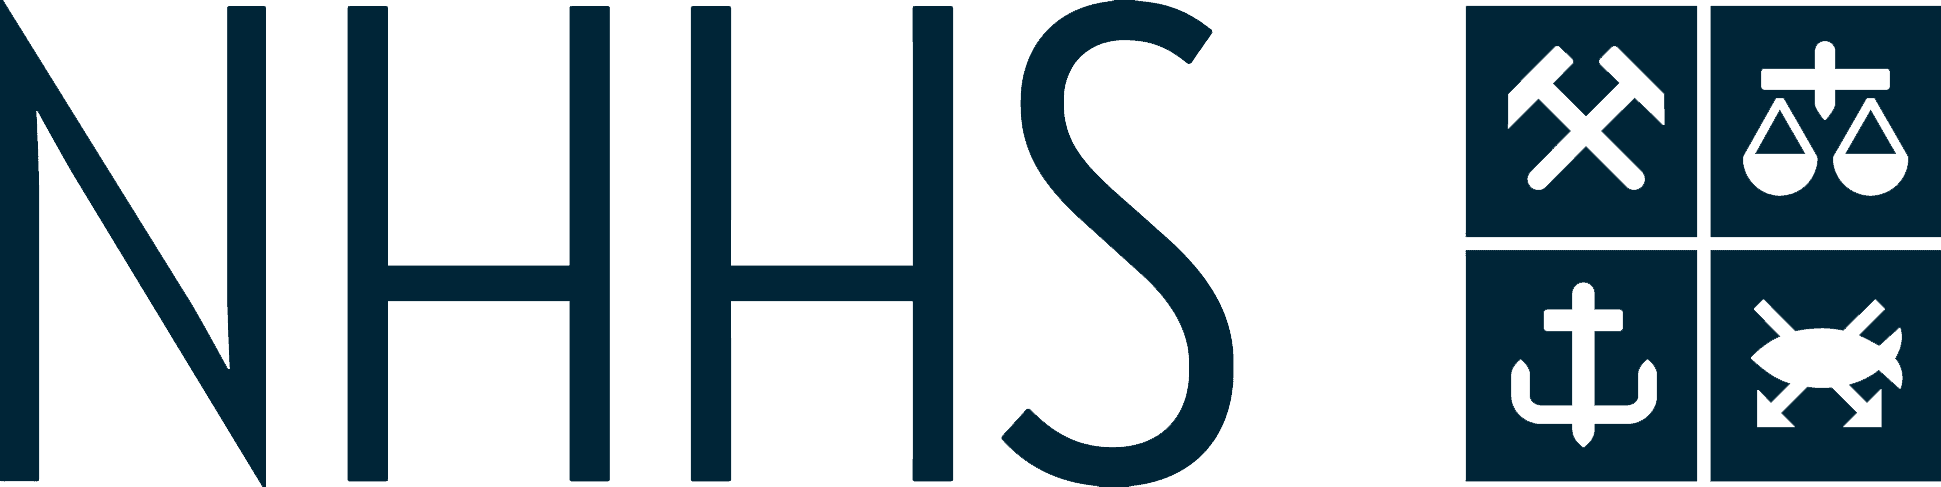 NHHS logo med gjennomsiktig bakgrunn